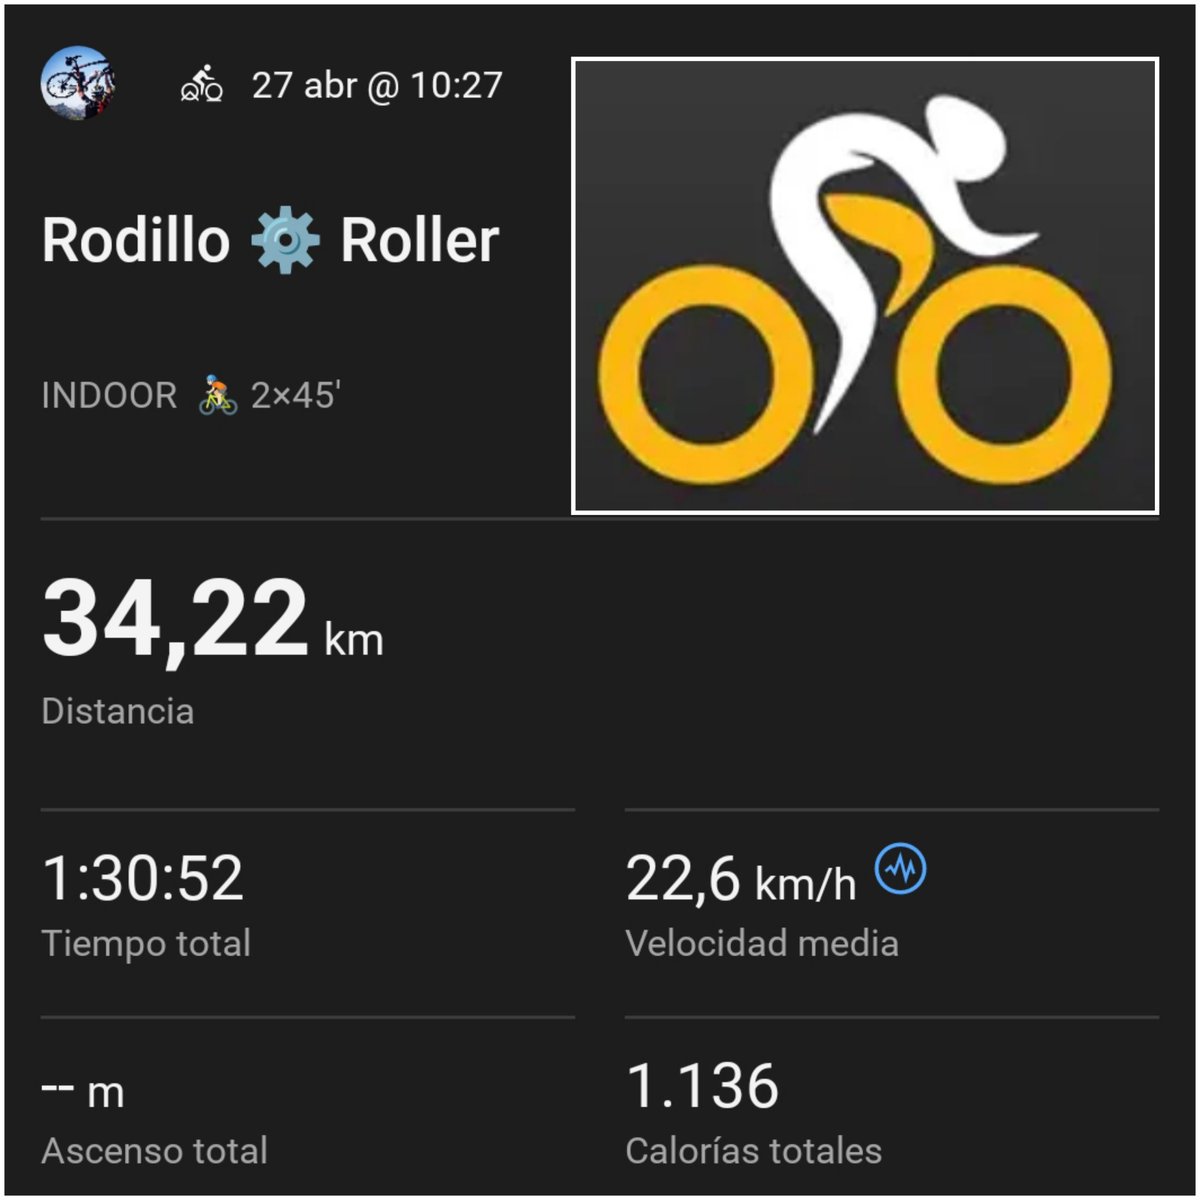 🚴🏼⚙️  2×45'
Doble sesión en el Rodillo
#bicicleta #bicycle
#ciclismo #cycling
#サイクリング #自転車
#specialized #campagnolo 
#yosoyciclista #iamcyclist
#rodillo #bikeroller #bikespinning
#indoorcycling #ciclismoensala
#DIABETESTIPOFREE
#MUÉVETEFRENTEALCÁNCER
#BICYCLESCHANGELIVES